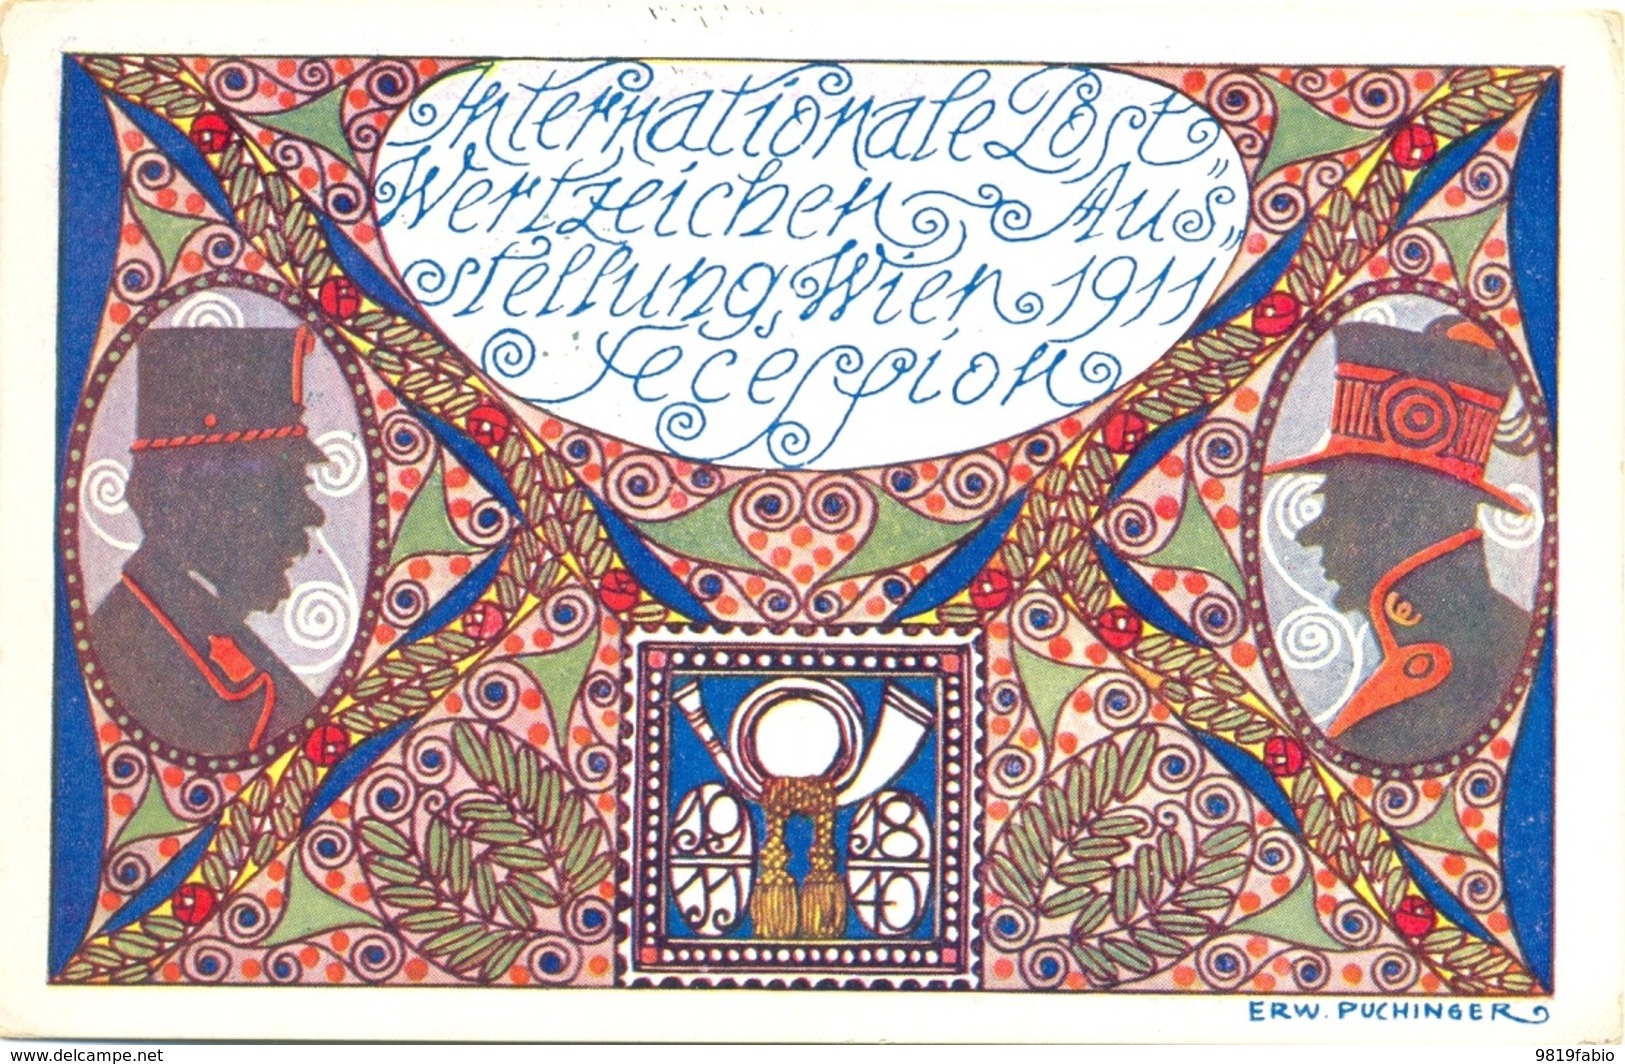 Puchinger International Post Wertzeichen Ausstellung Wien 1911 Secession - Esposizioni